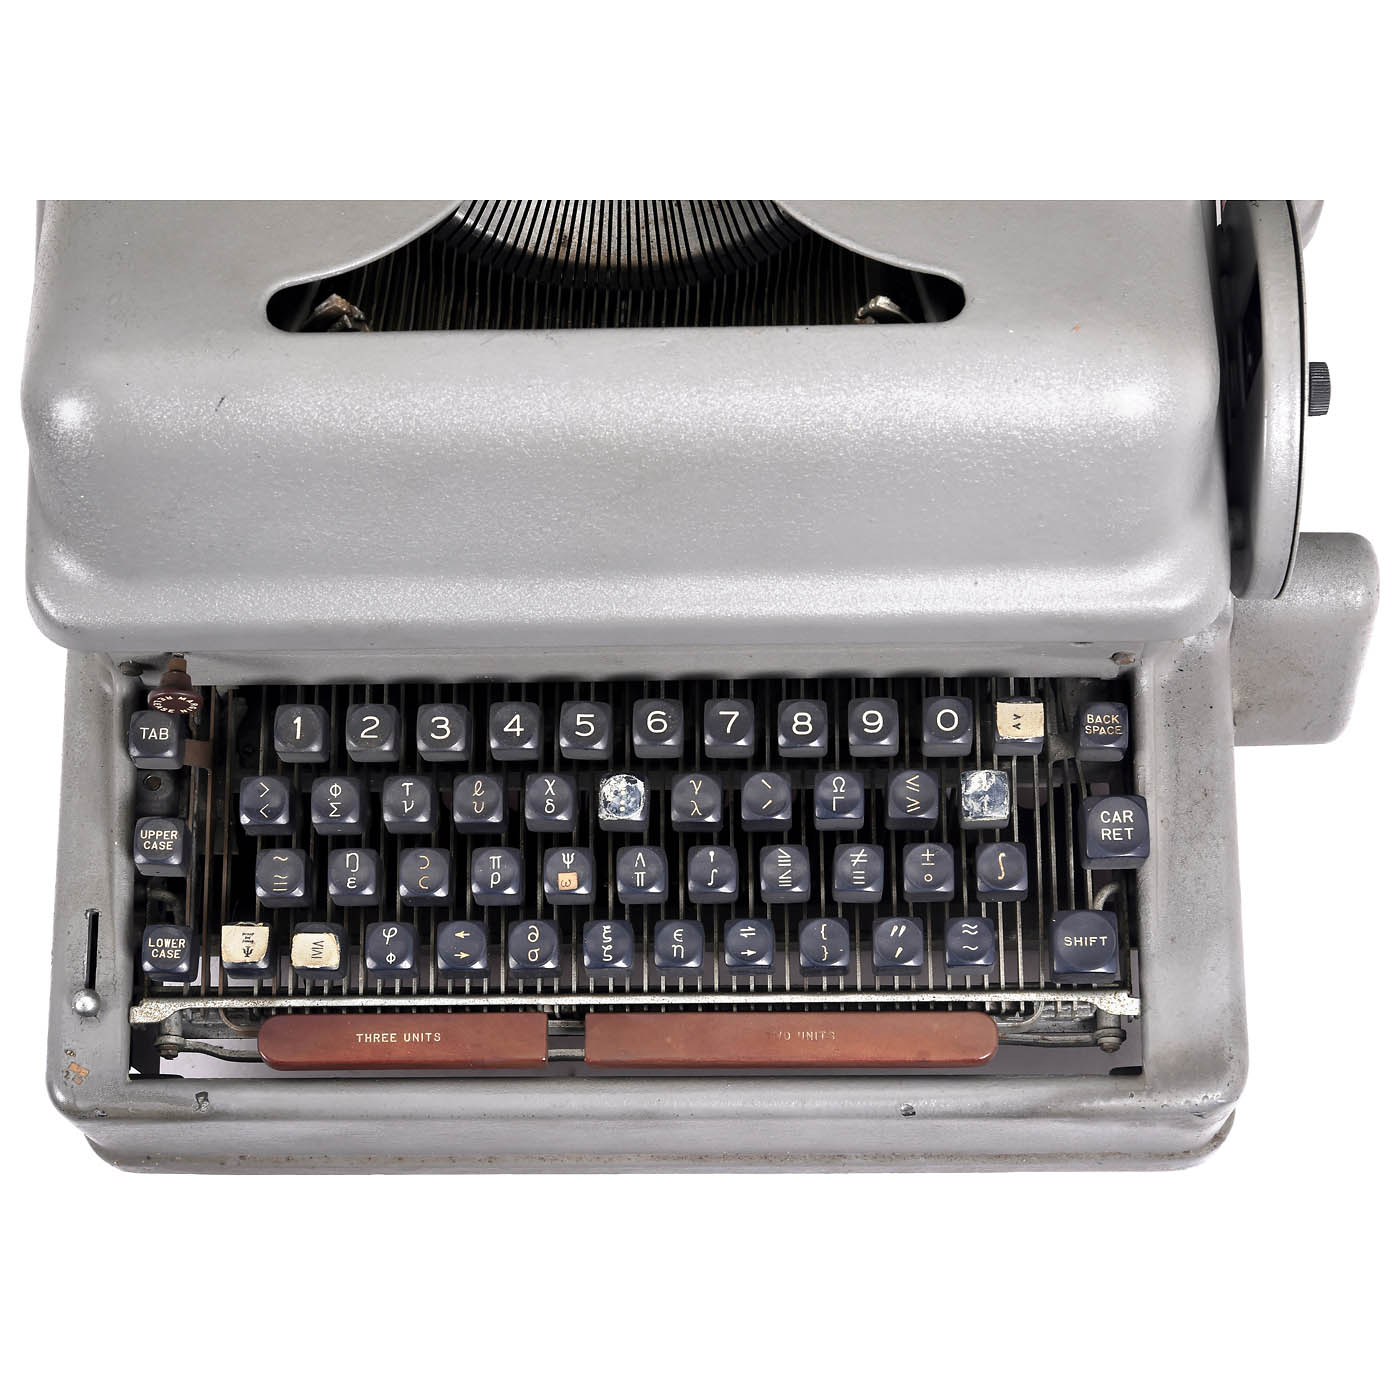 2 IBM Electric Typewriters - Image 4 of 5